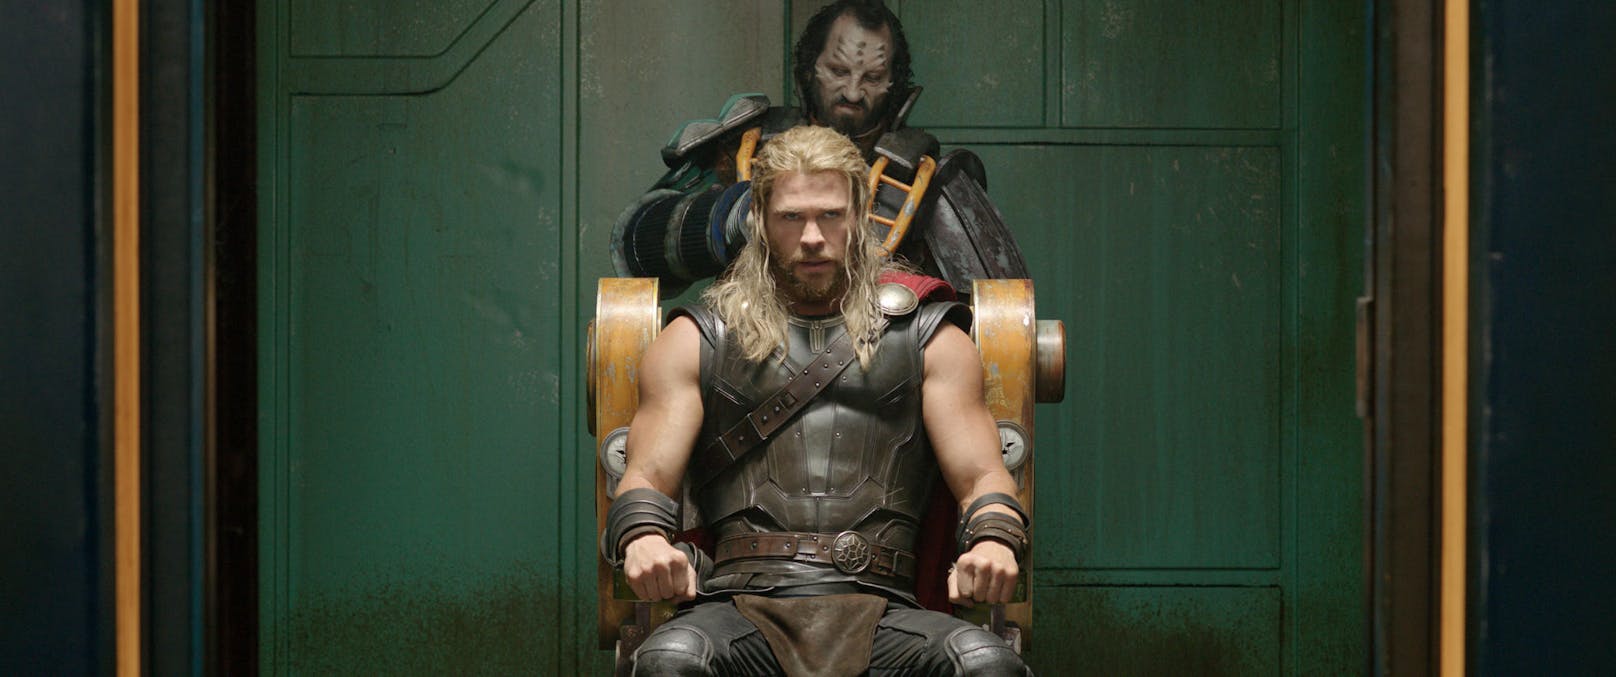 Chris Hemsworth als Thor in "Thor: Ragnarok"